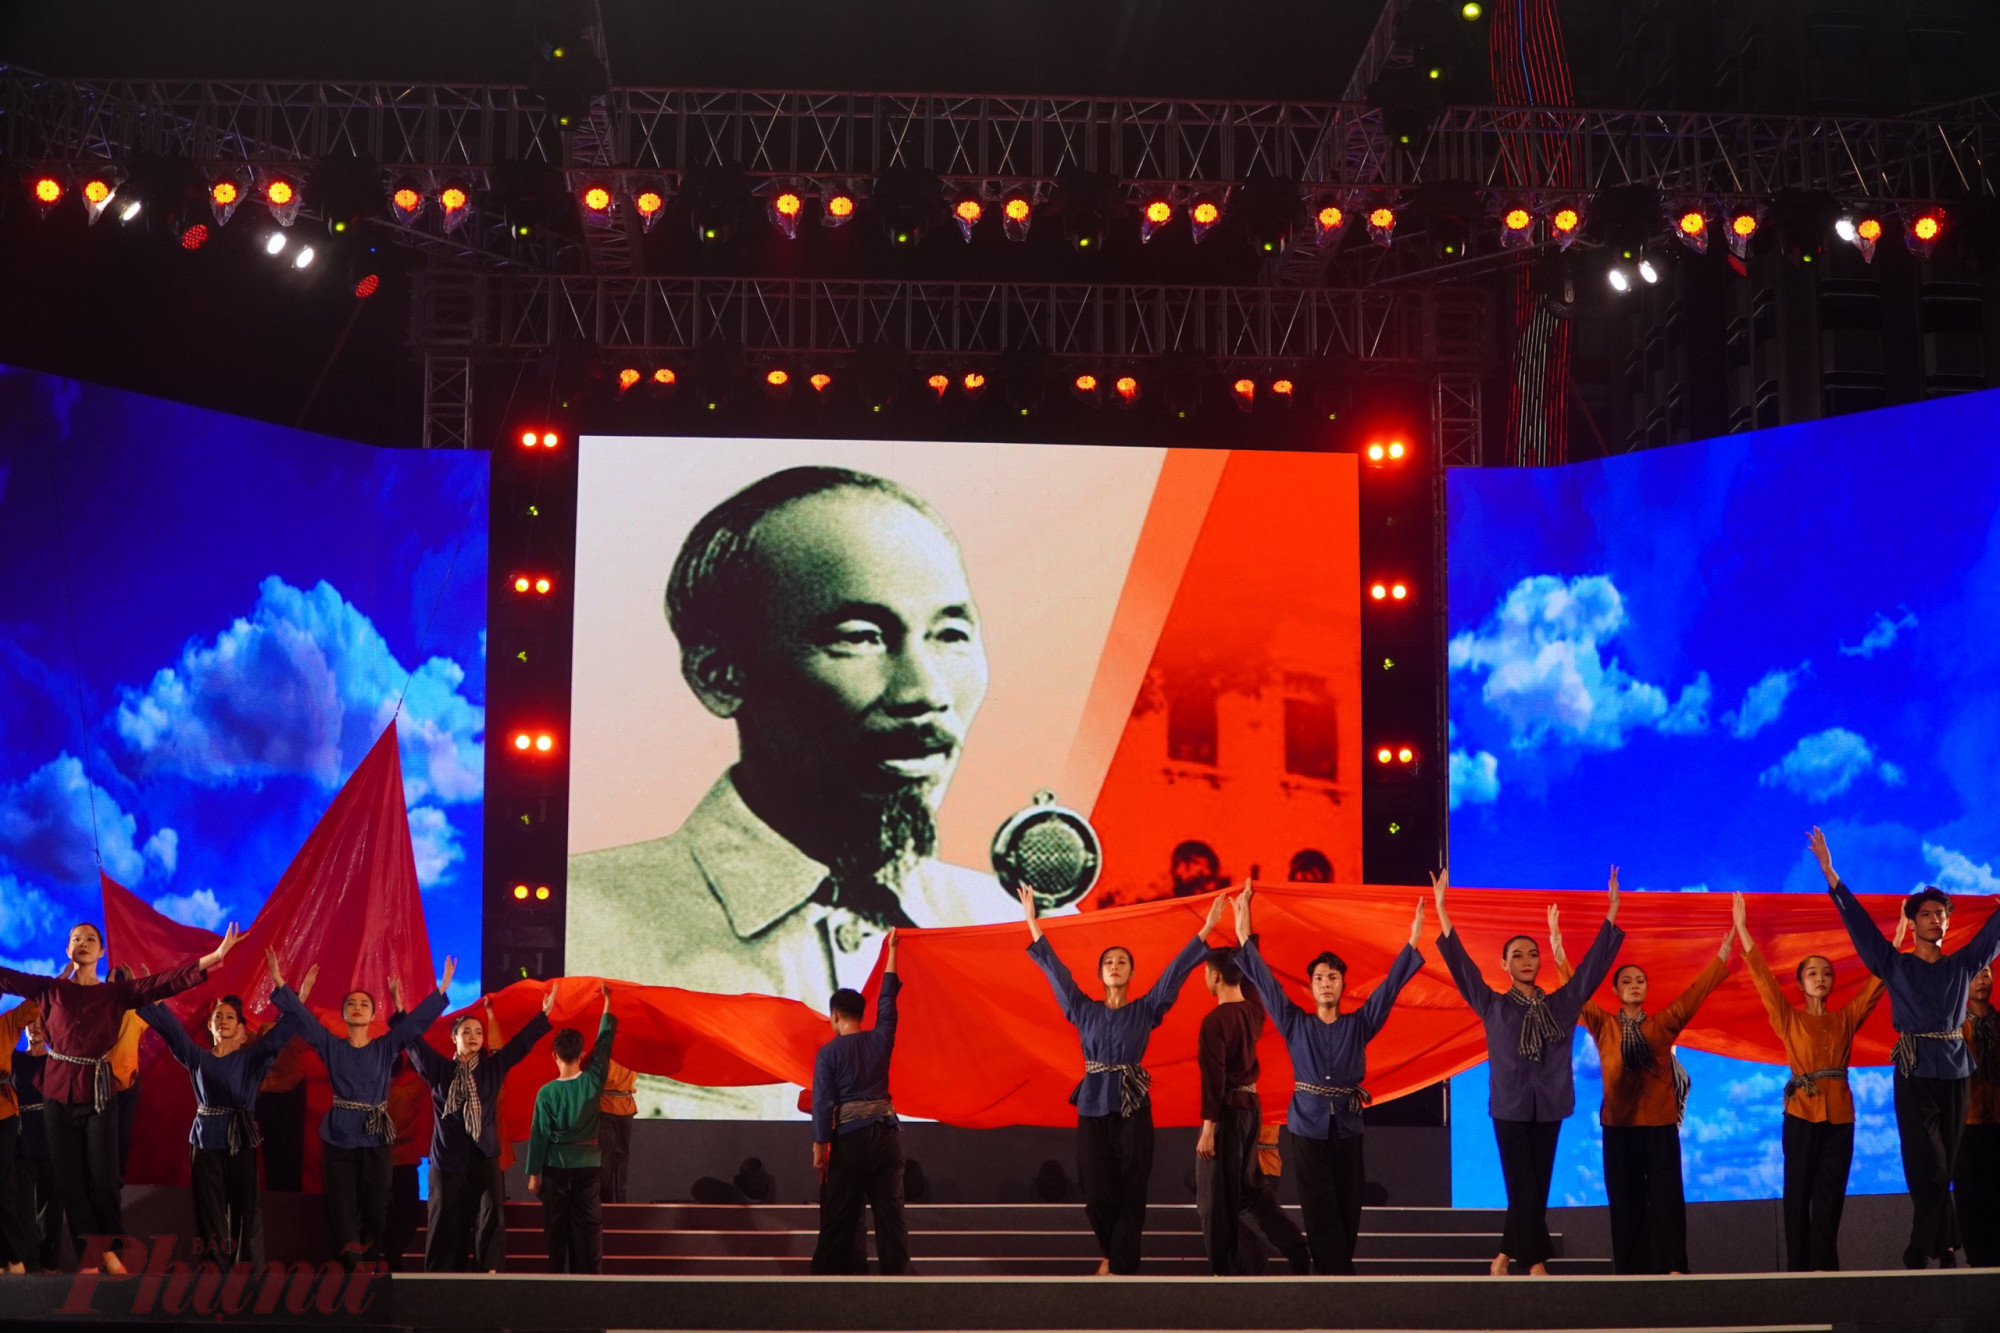 Tối 2/9, đêm nghệ thuật Tết độc lập: Bừng sáng khát vọng dân tộc diễn ra tại đường đi bộ Nguyễn Huệ (Q.1, TPHCM) nhân kỷ niệm 77 năm ngày Quốc khánh (2/9/1945- 2/9/2022), 77 năm ngày Cách mạng Tháng Tám (19/8/1945 - 19/8/2022), ngày Sài Gòn khởi nghĩa giành chính quyền (25/8/1945 - 25/8/2022). 